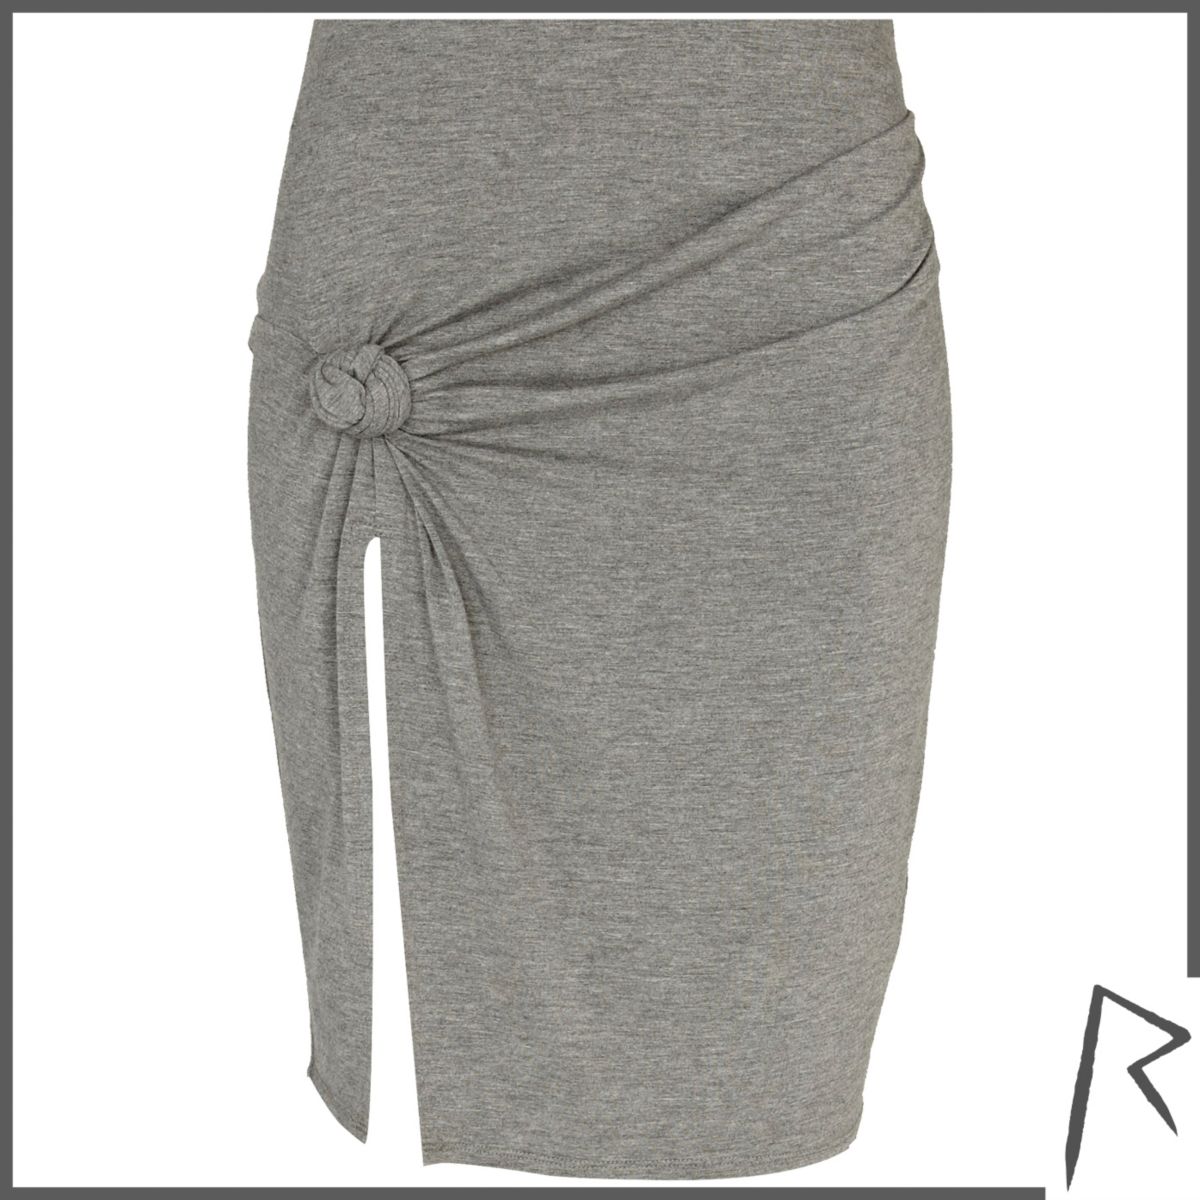 Grey Rihanna knot front thigh split skirt - Skirts - Sale - women